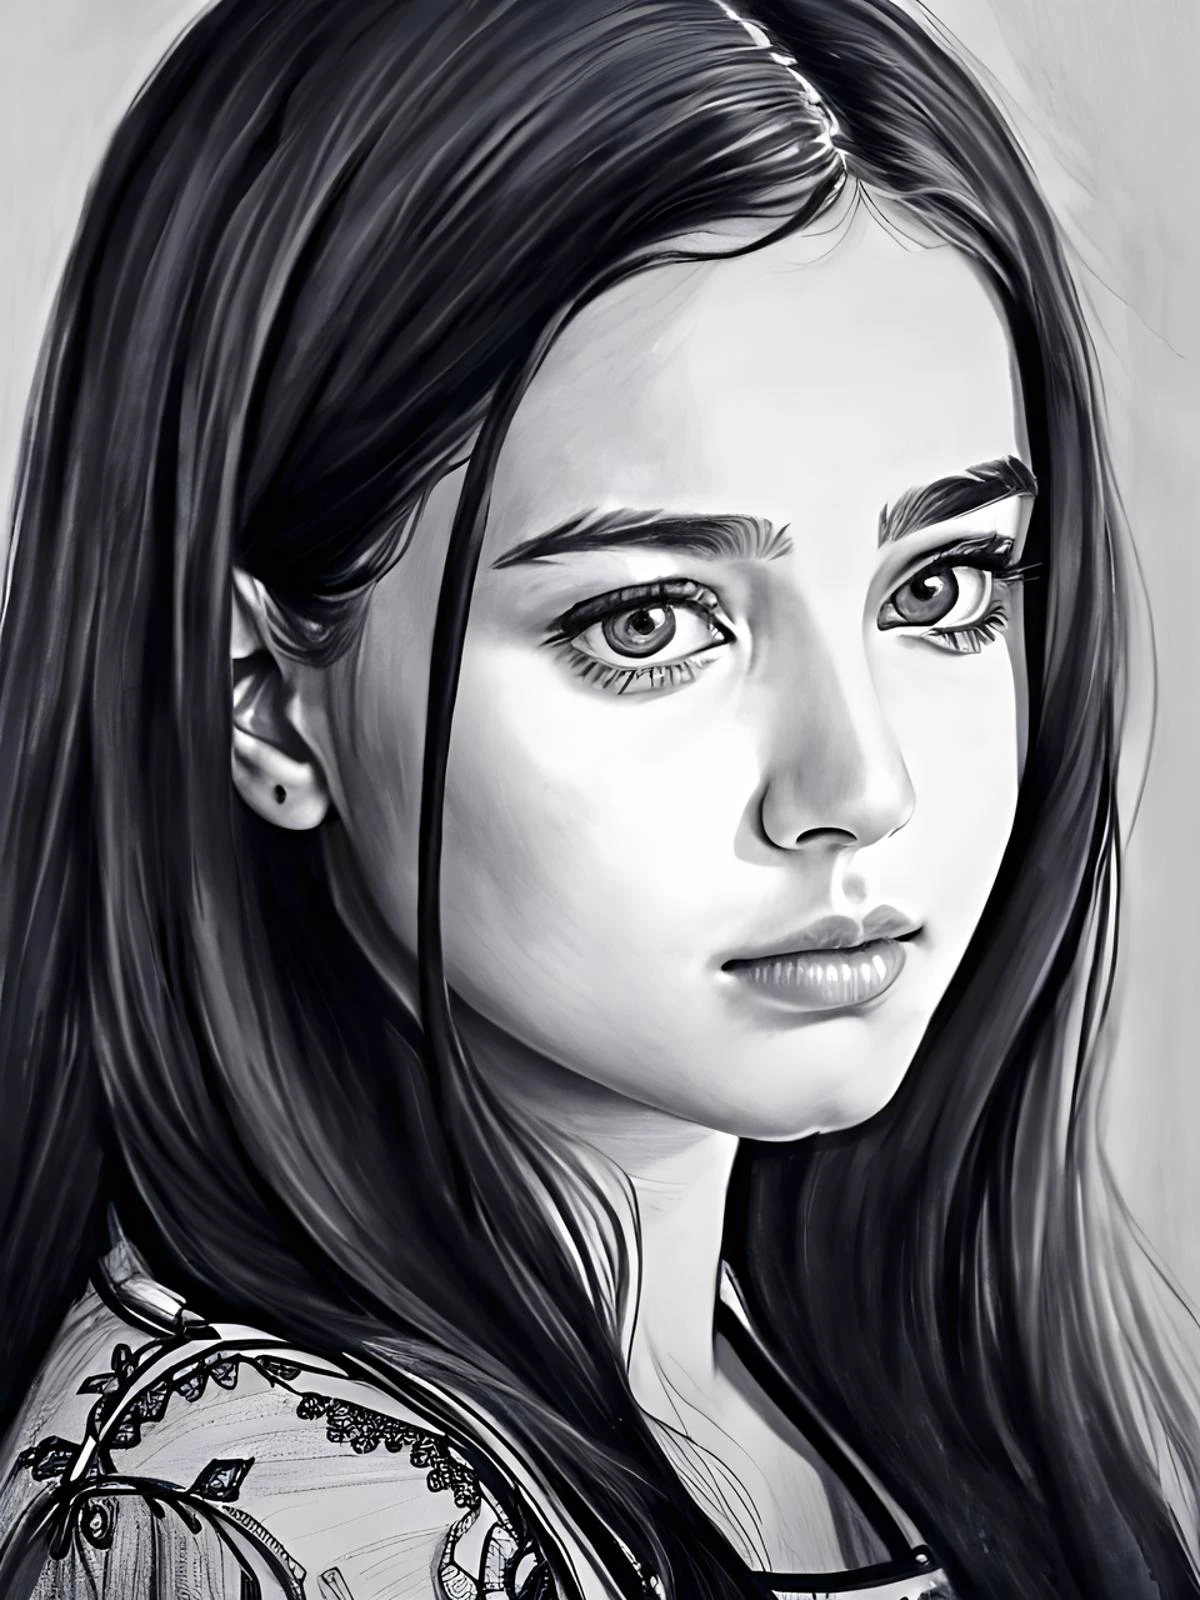 一个 21 岁女孩的肖像, 漂亮脸蛋, pencil 草图, 8千, 错综复杂, 最好的质量, 荒诞, 铅笔画, 杰作, 高细节, 草图, 悲伤的样子